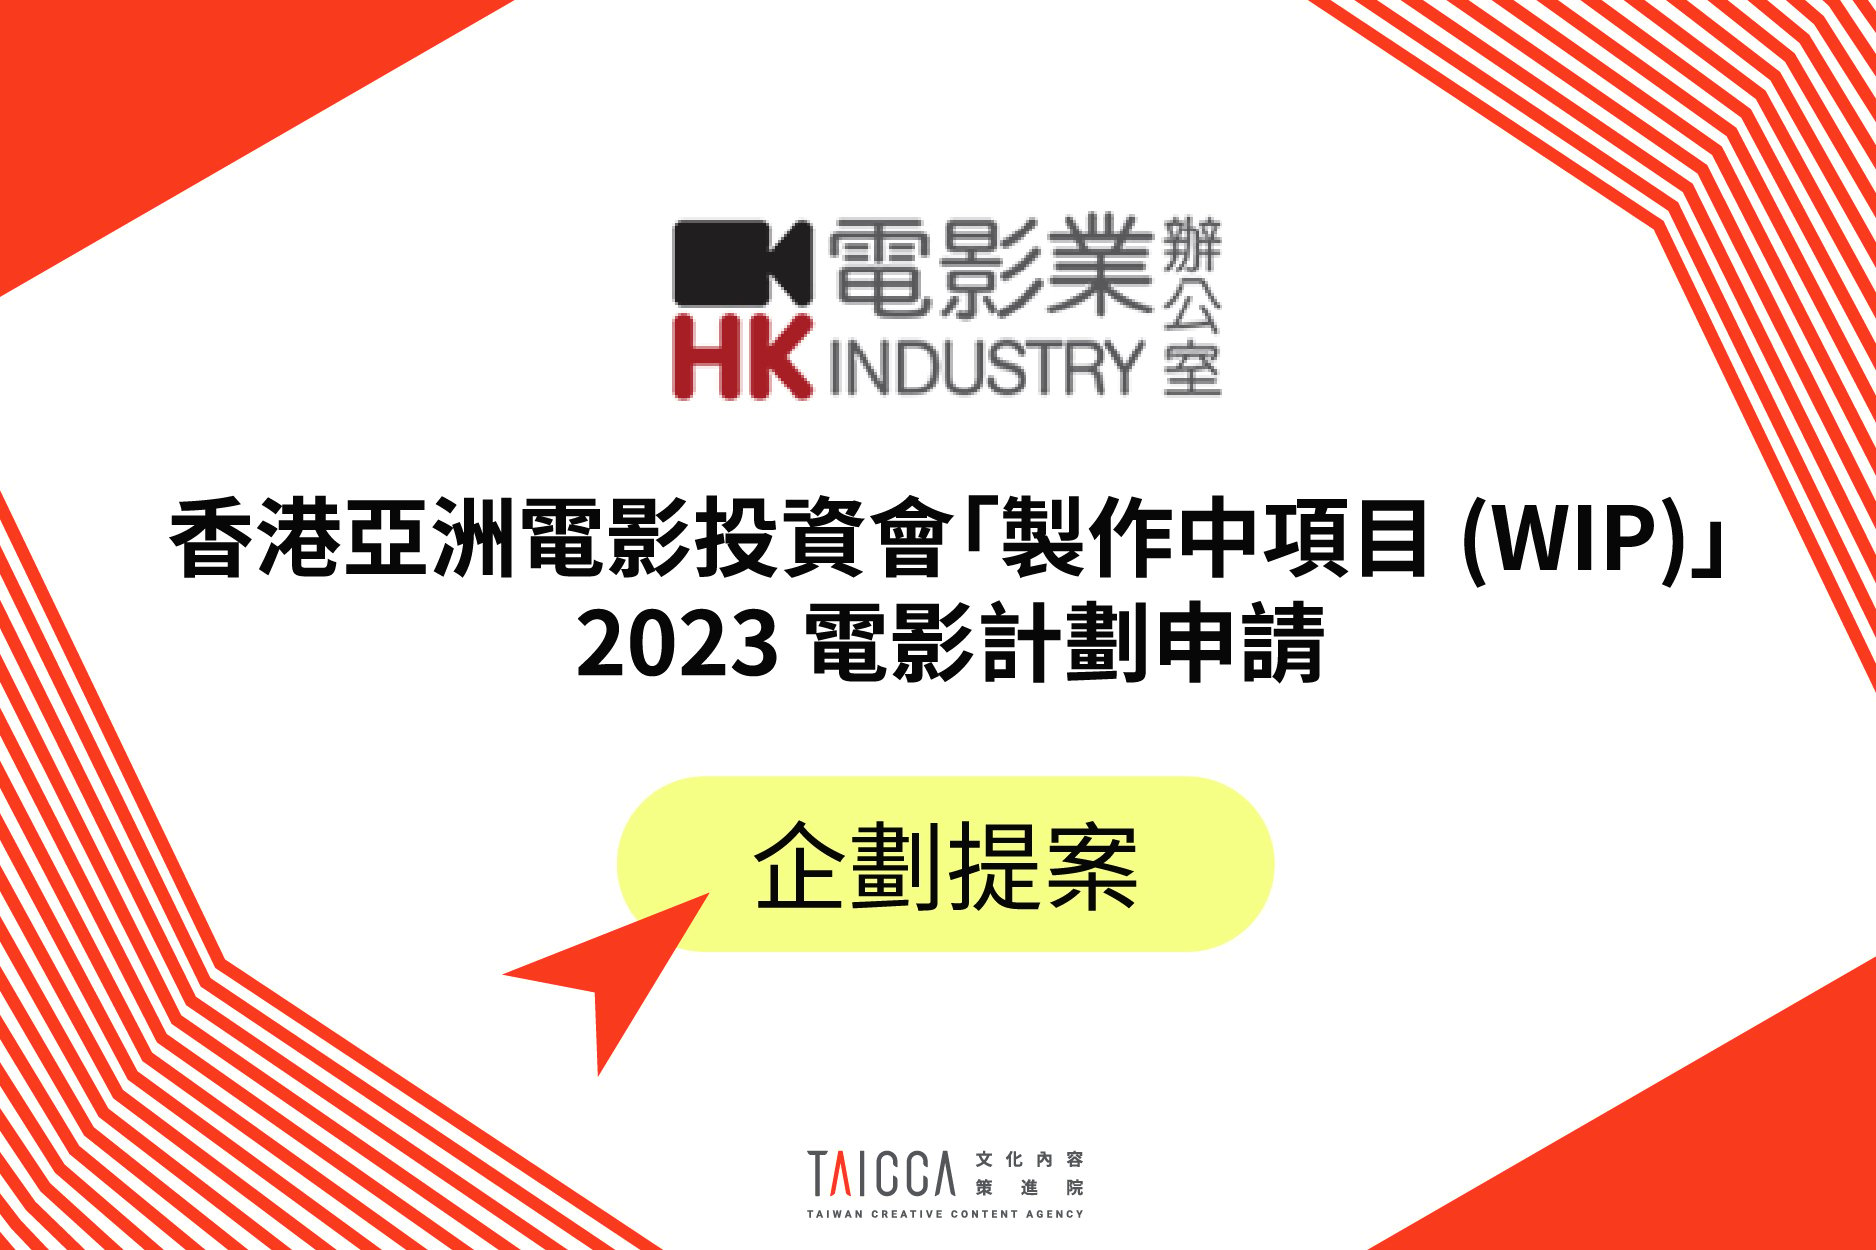 2023 香港亞洲電影投資會「製作中項目 (WIP)」電影計劃申請